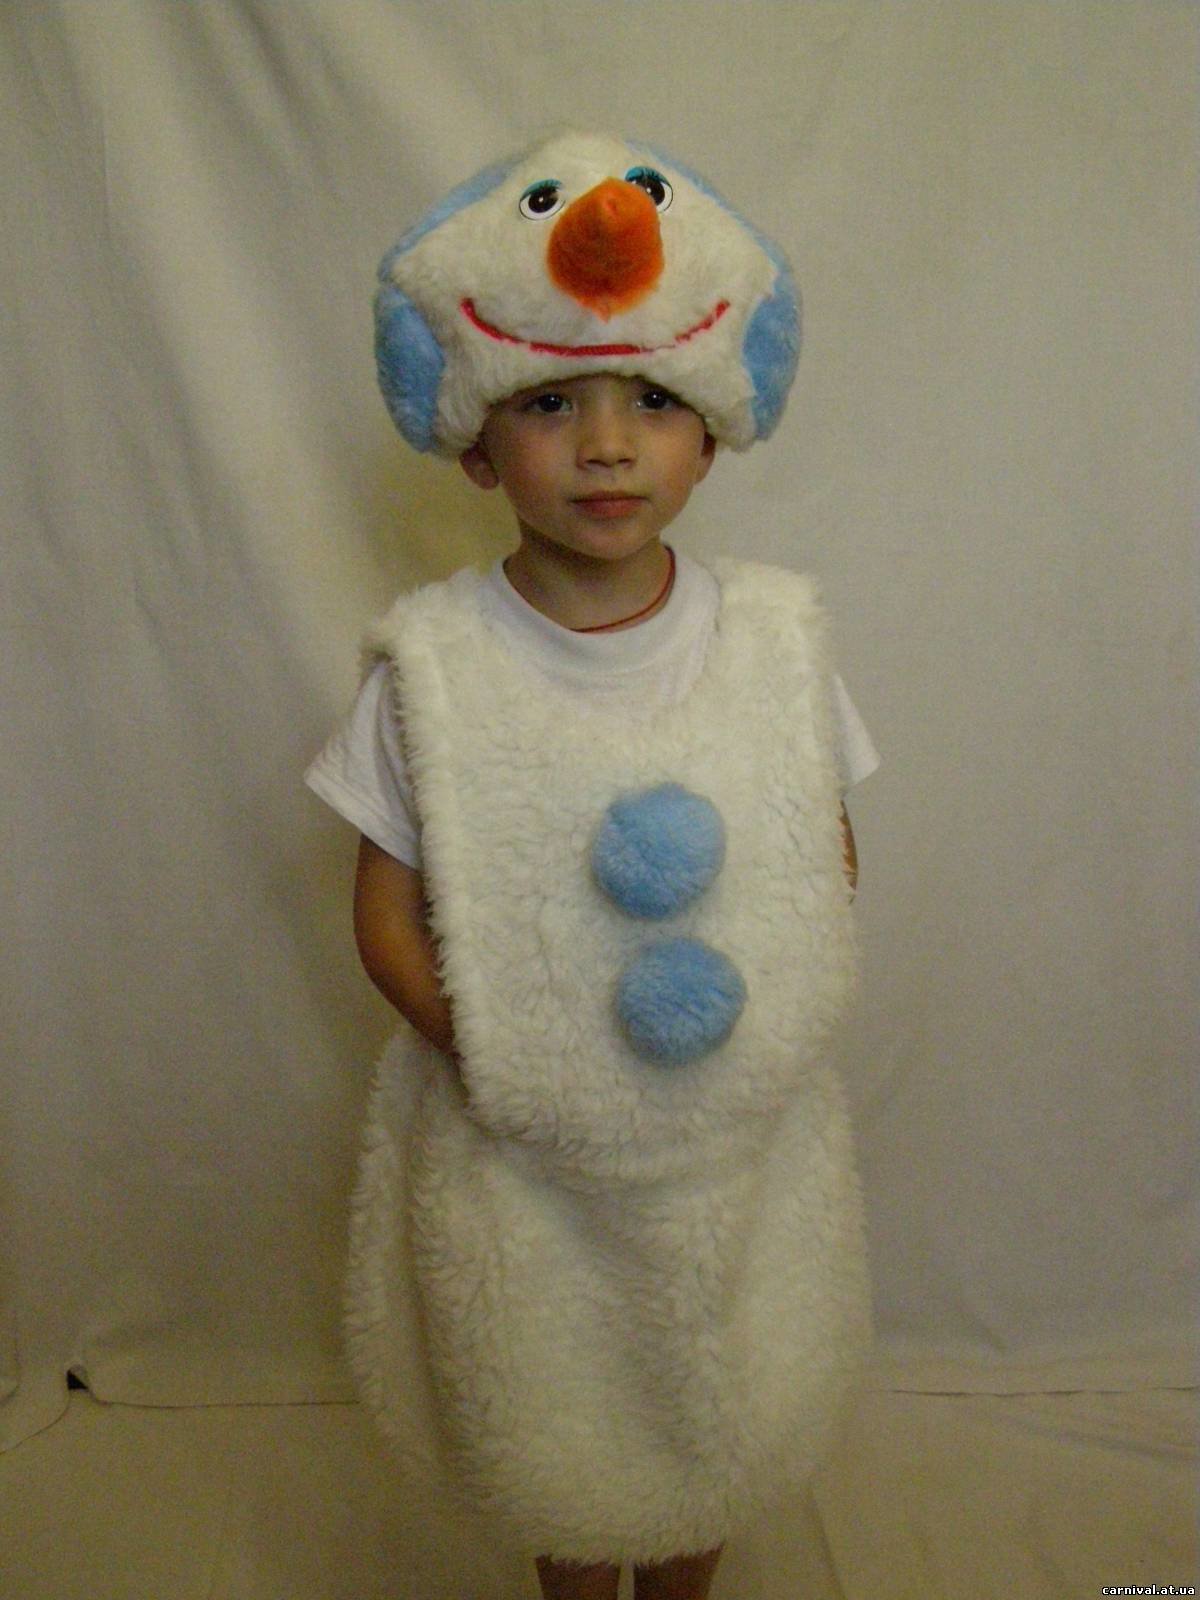 Костюм снеговика своими руками - пошив праздничного наряда от а до я (90 фото + видео)